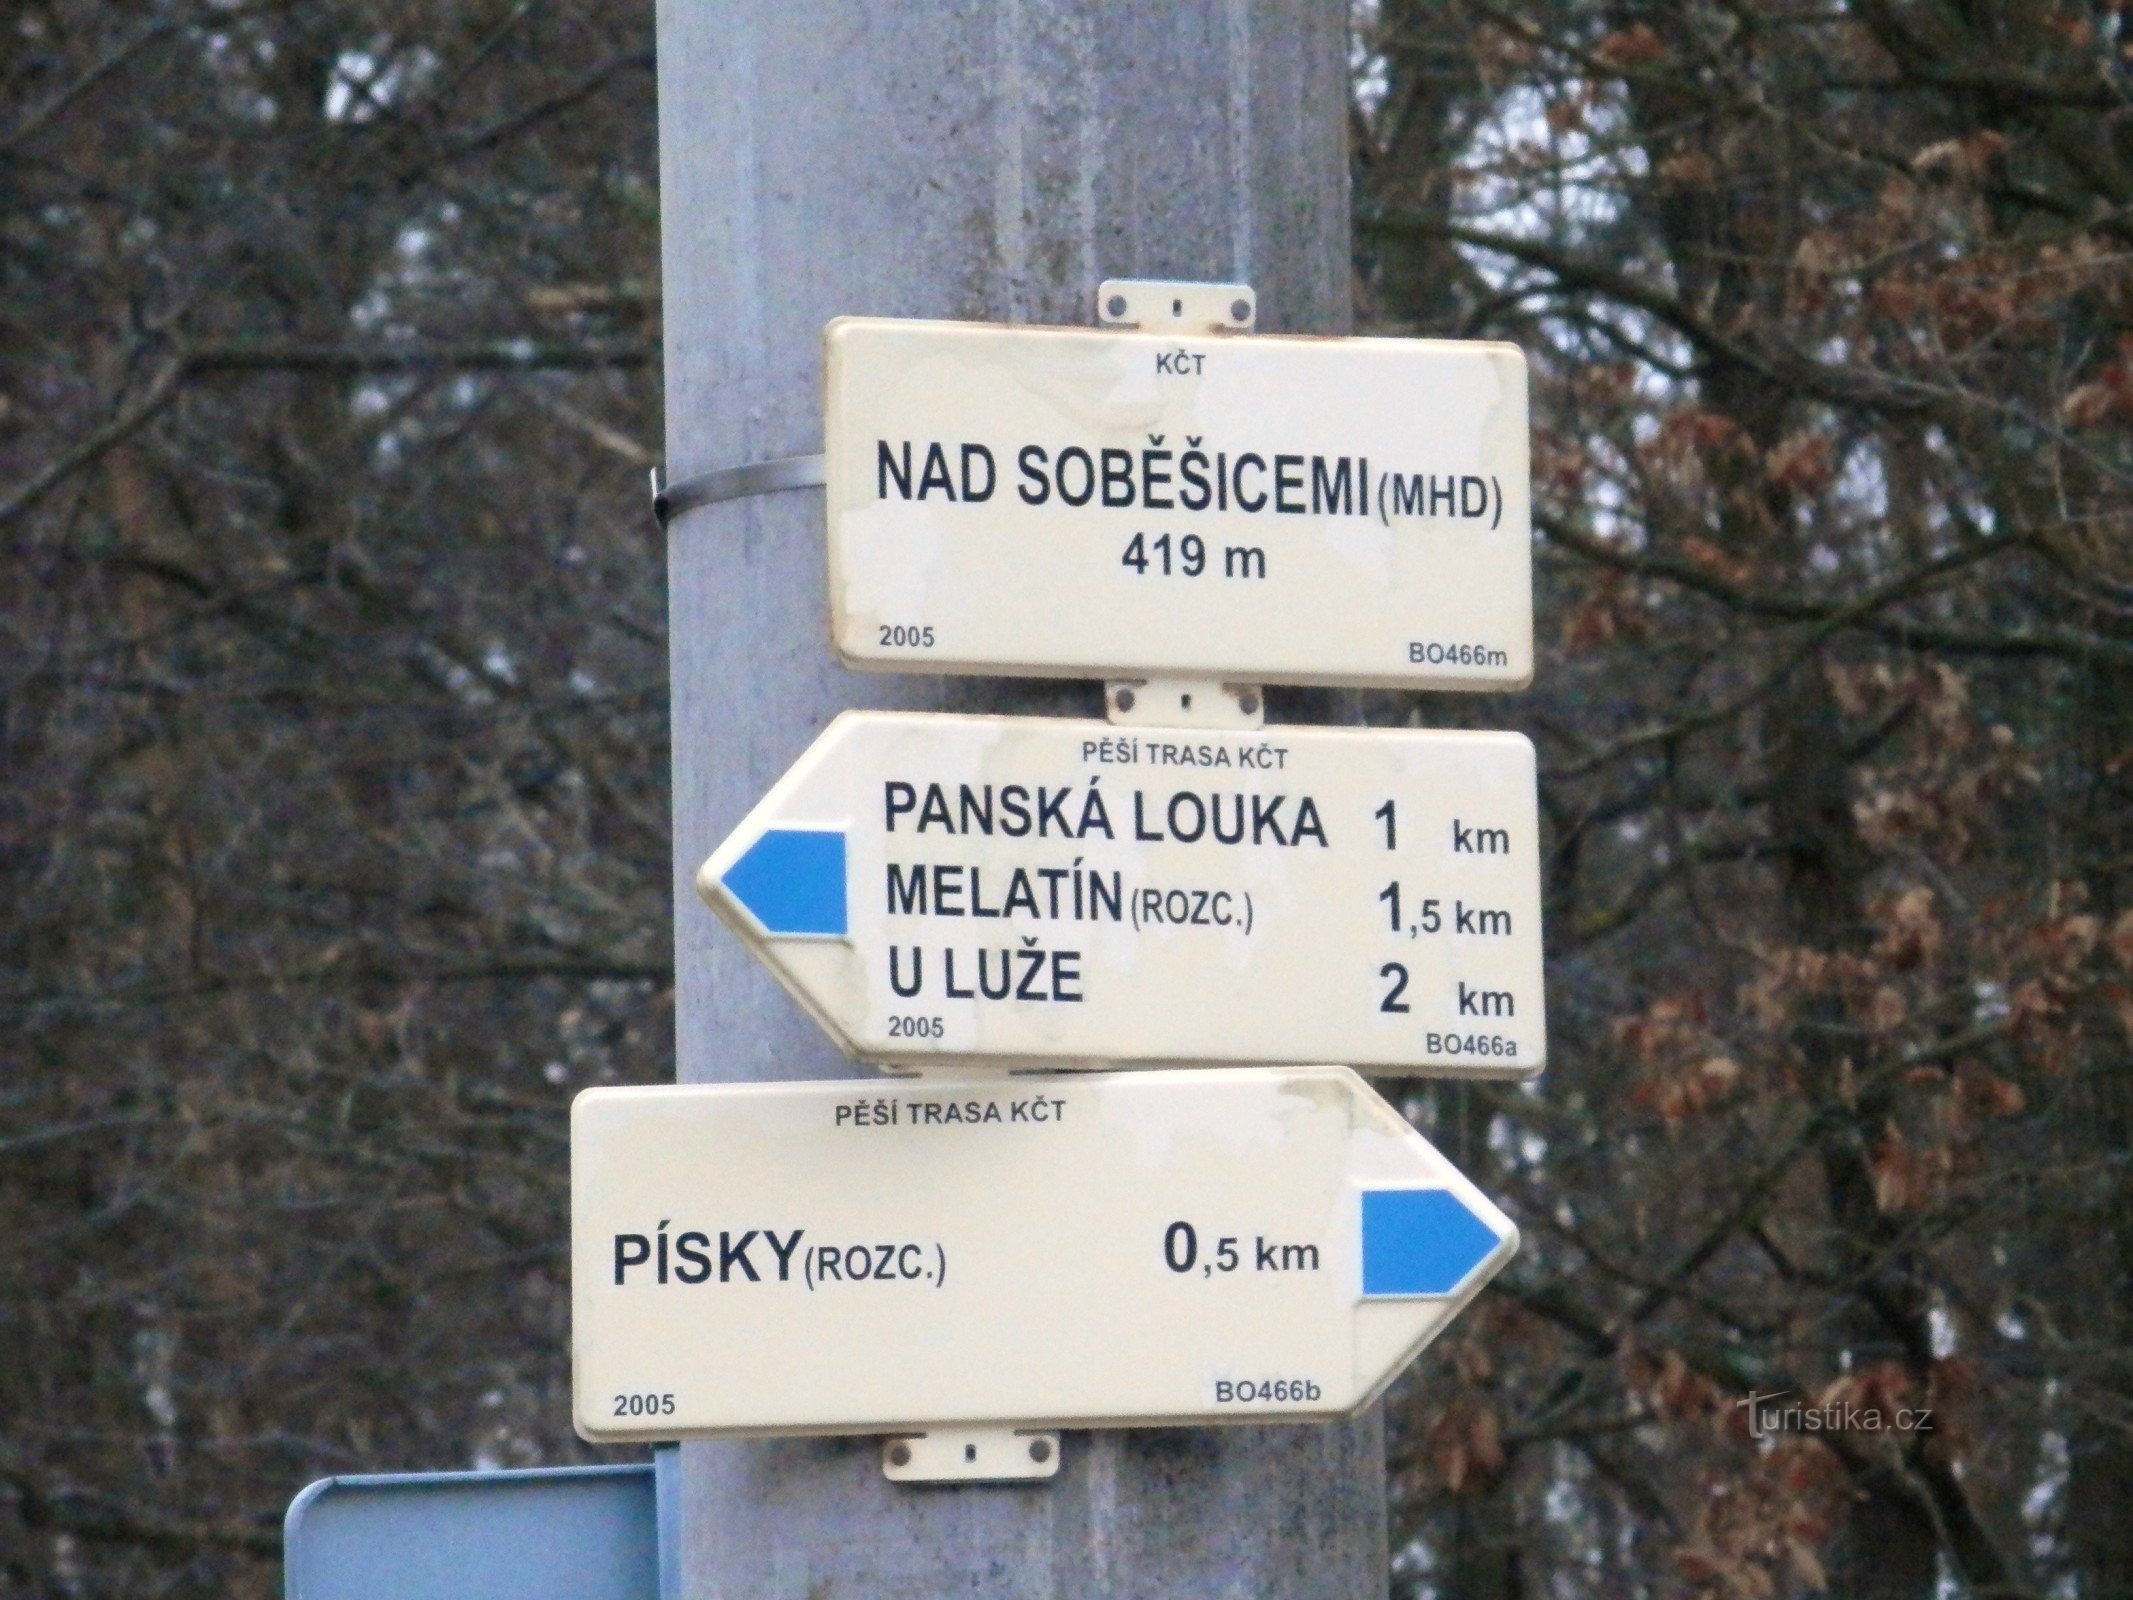 Nad Soběšicemi (transporte público) - cruce de rutas turísticas marcadas